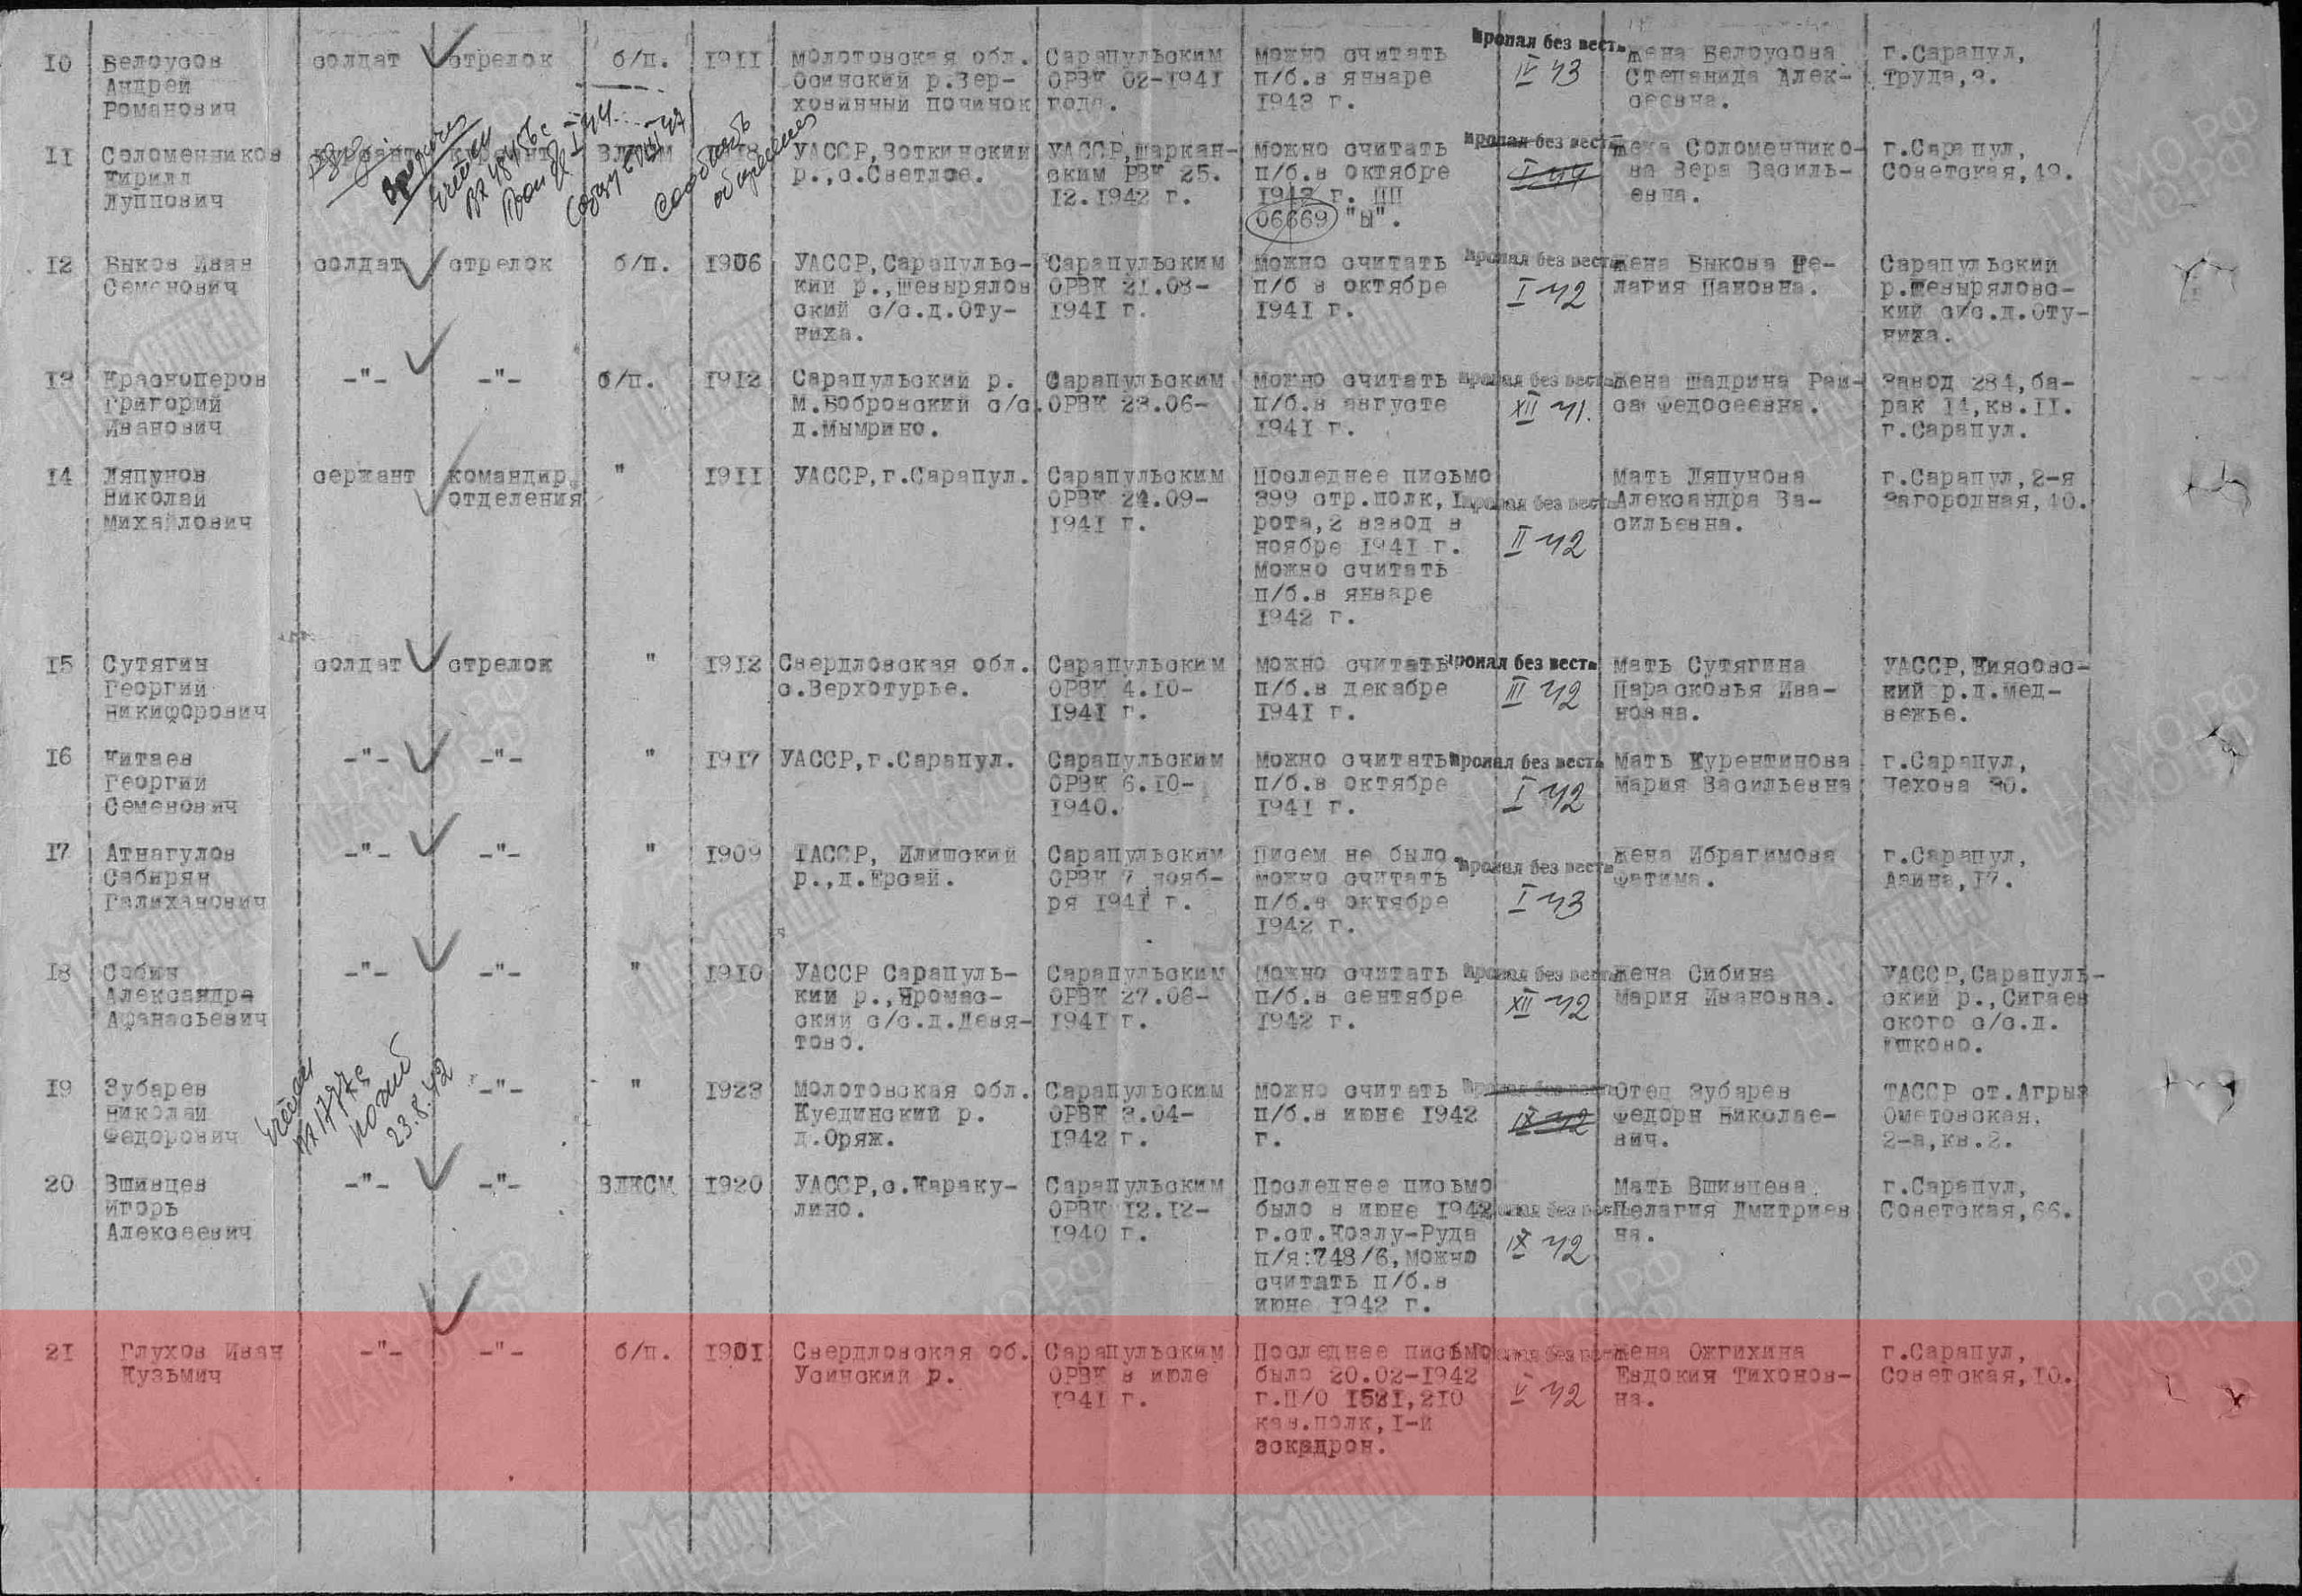 Лист донесения послевоенного периода, уточняющего потери, 17.10.1947